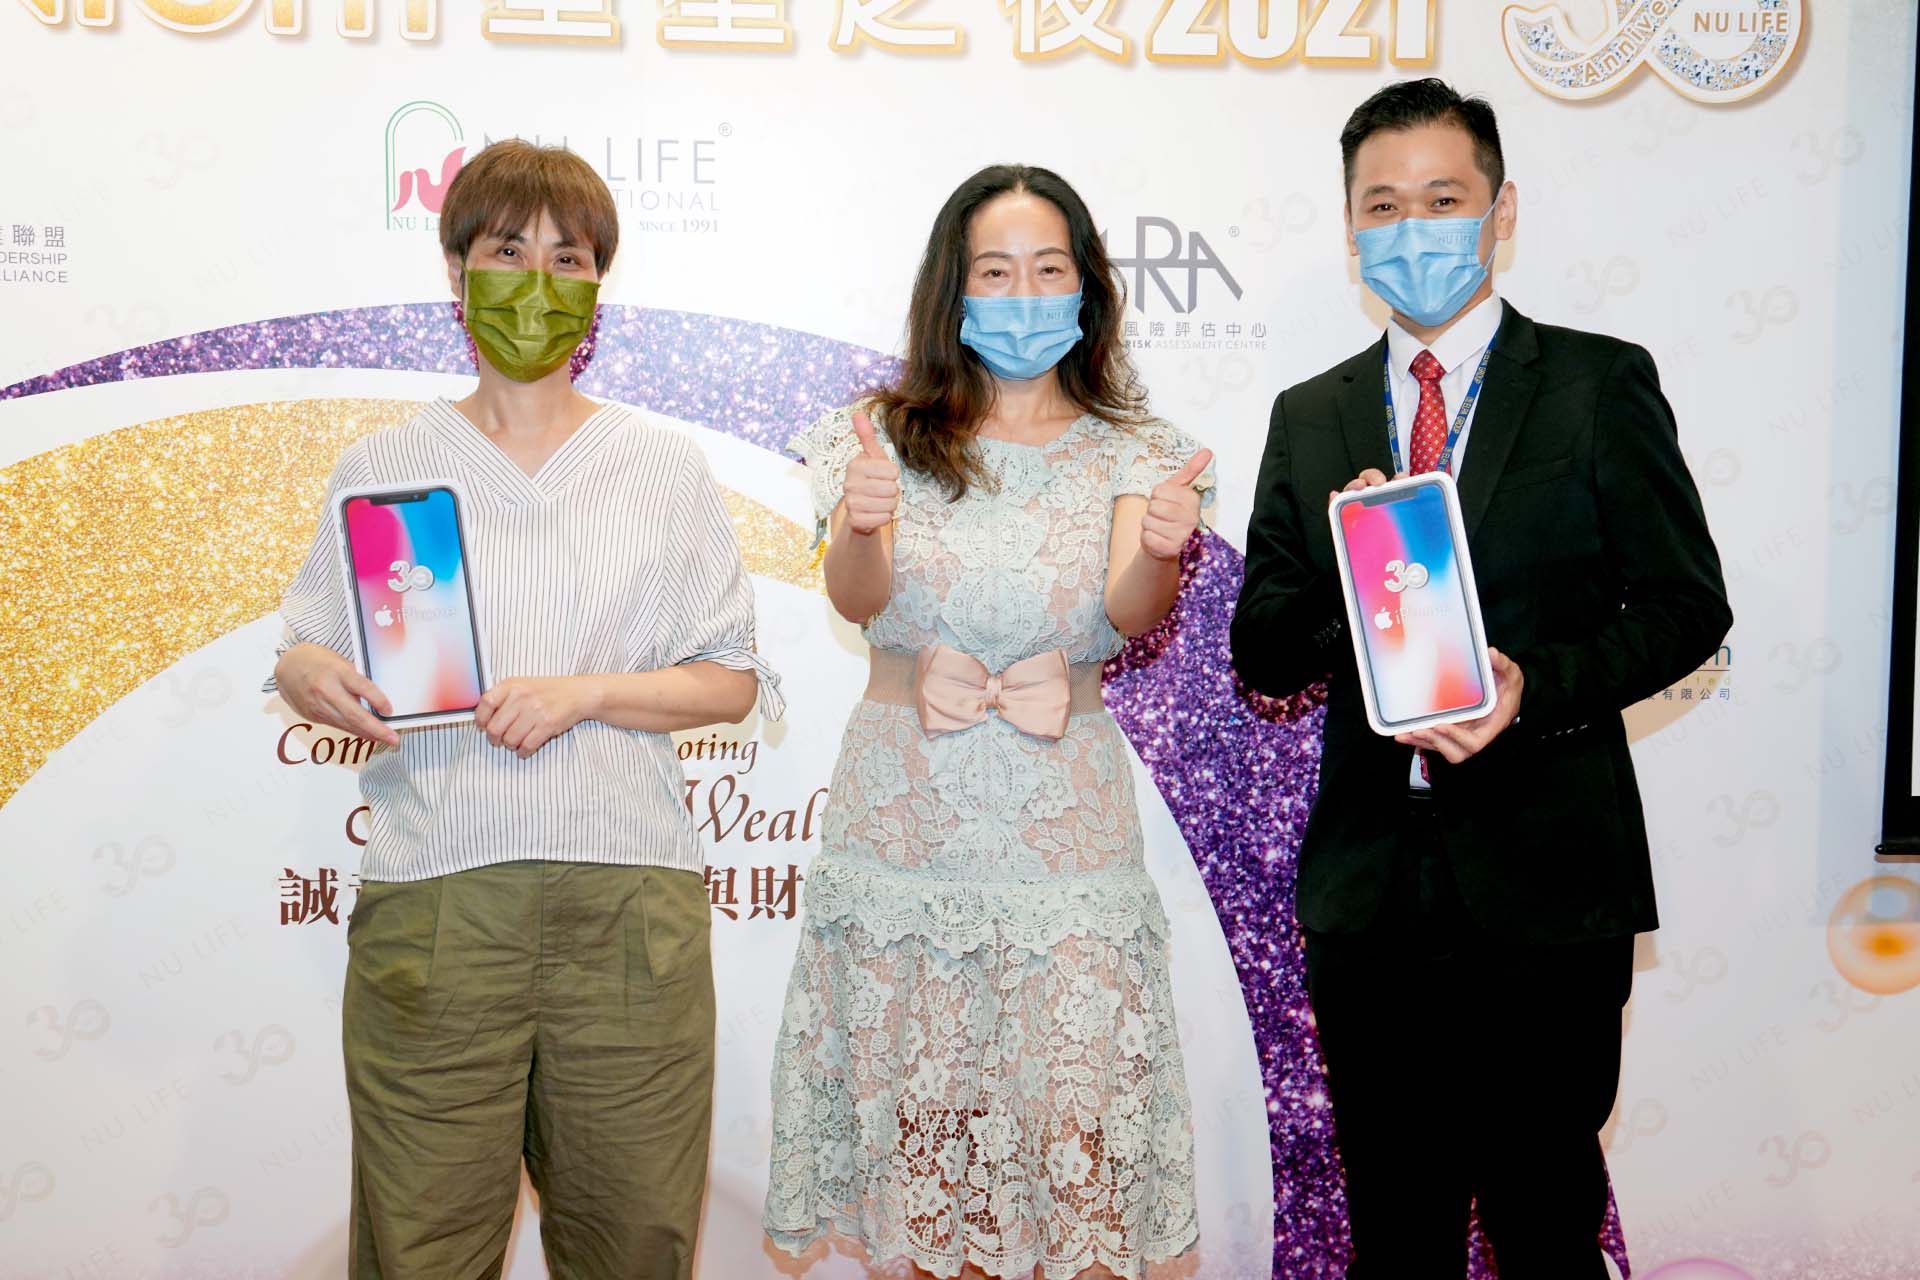 月月狂Phone 月月送NU LIFE 30週年iphone 大抽獎得獎者 – Terri Kwok(左)及李卓霖先生(右)